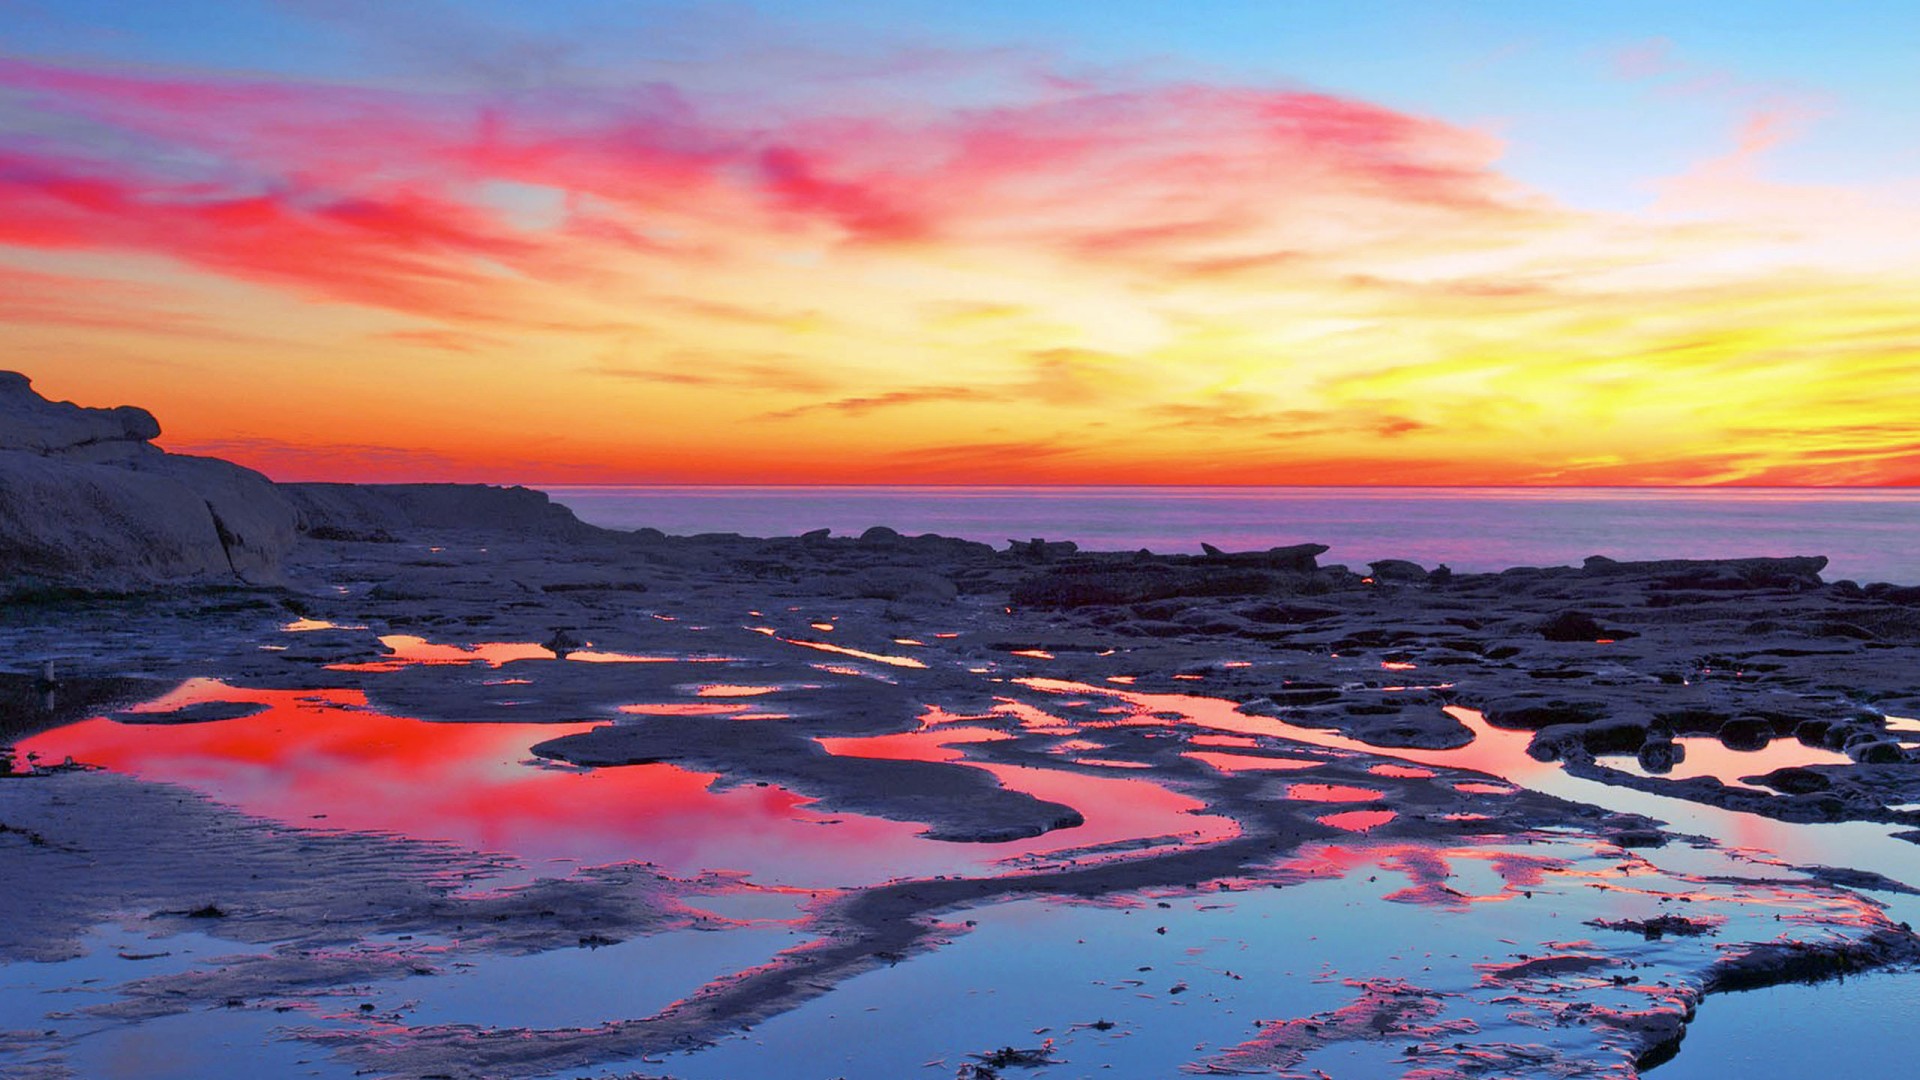 夕阳下的大海图片素材 高清大海夕阳壁纸(2)